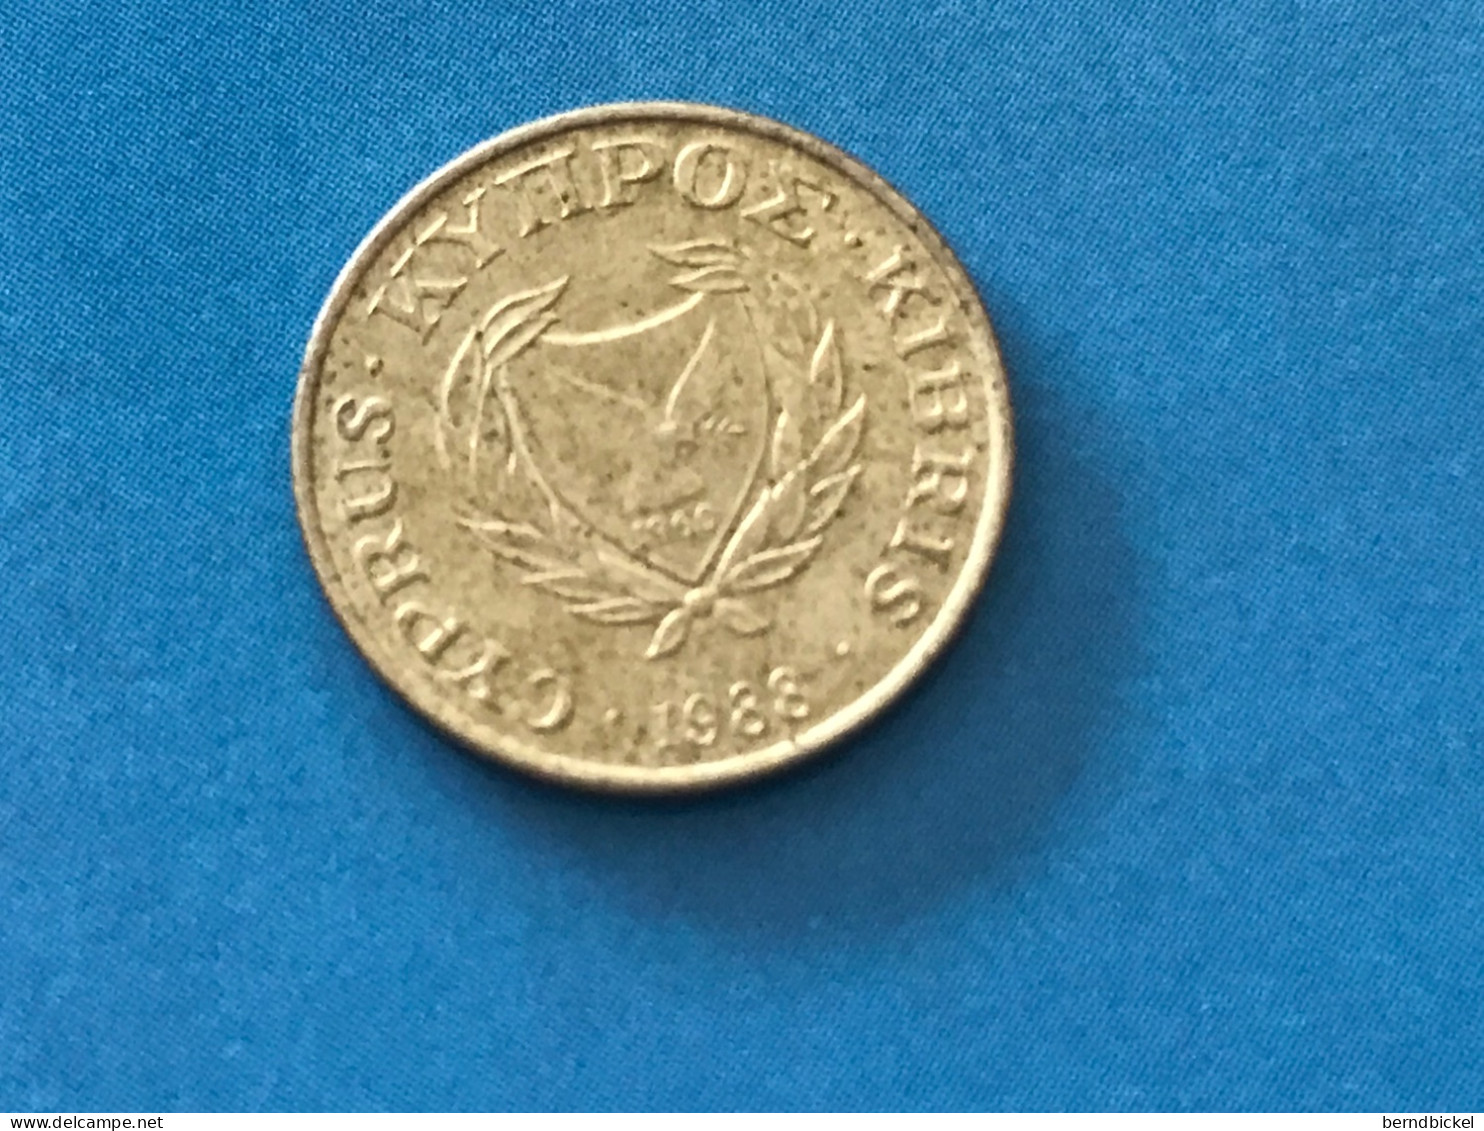 Münze Münzen Umlaufmünze Zypern 1 Cent 1988 - Zypern